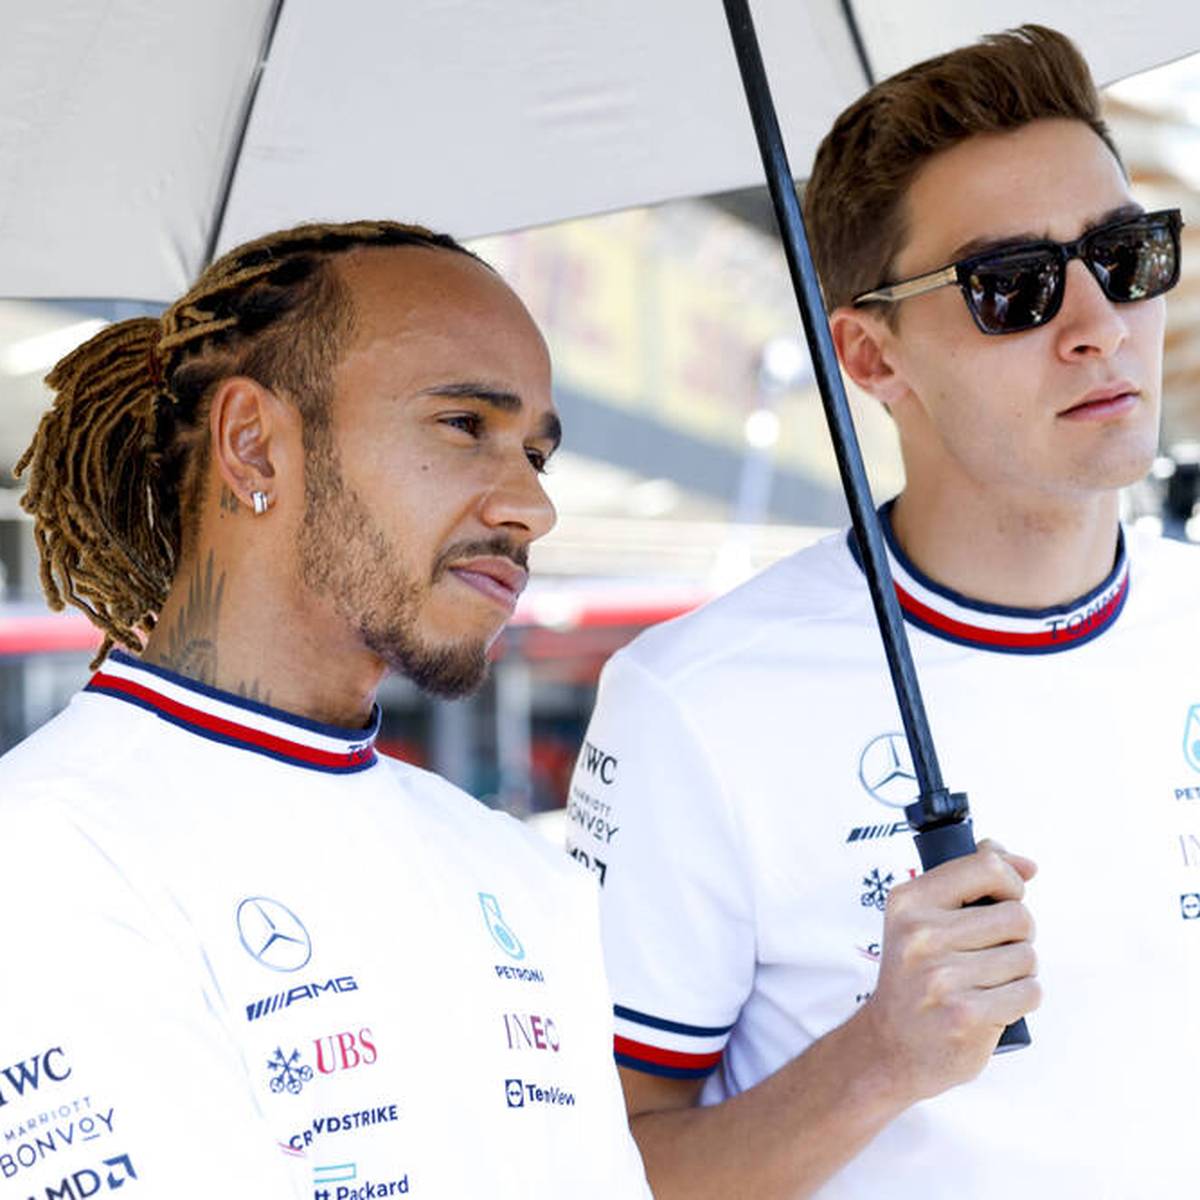 Die Formkurve von Mercedes zeigt in der Formel 1 nach oben. Allerdings möchte Lewis Hamilton vor dem Heimrennen in Silverstone den Testfahrer-Job loswerden.